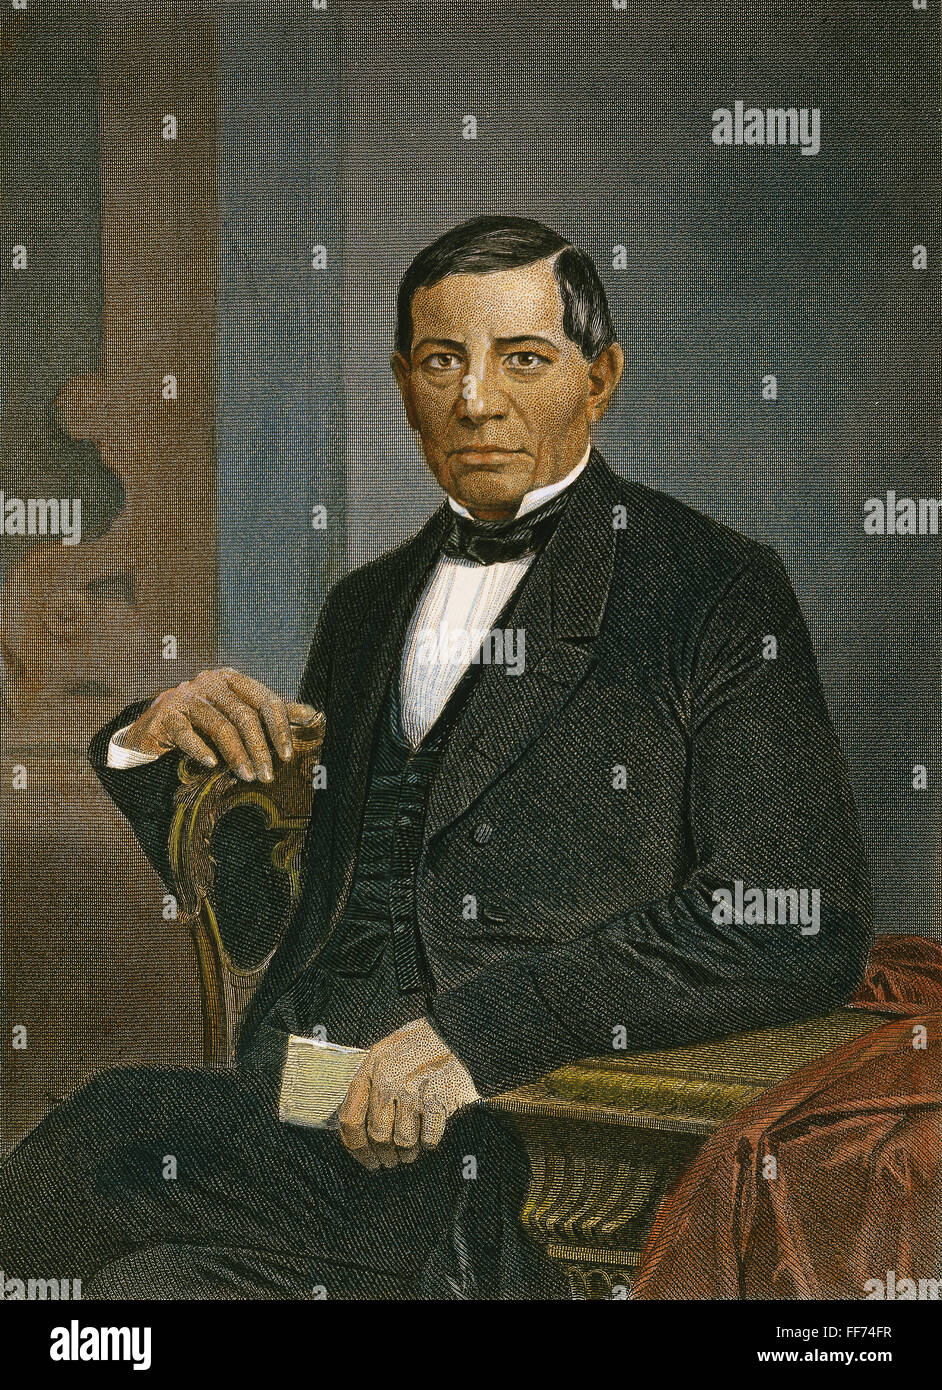 BENITO JUAREZ (1806-1872). /NMexican rivoluzionario e statista. In acciaio colorato incisione, American, 1870. Foto Stock